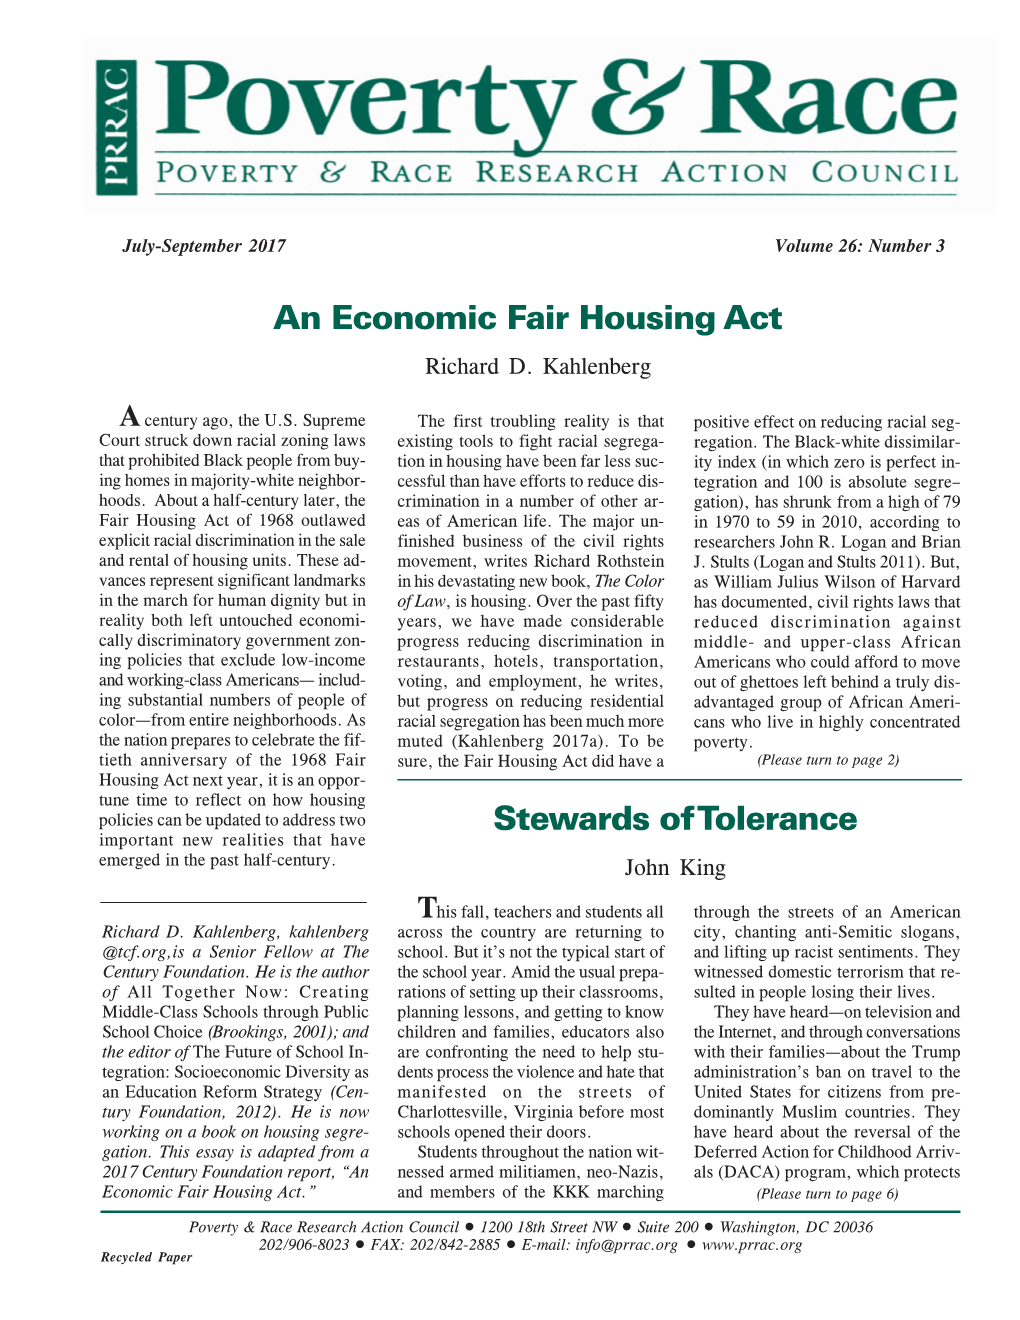 Economic Fair Housing Act Richard D